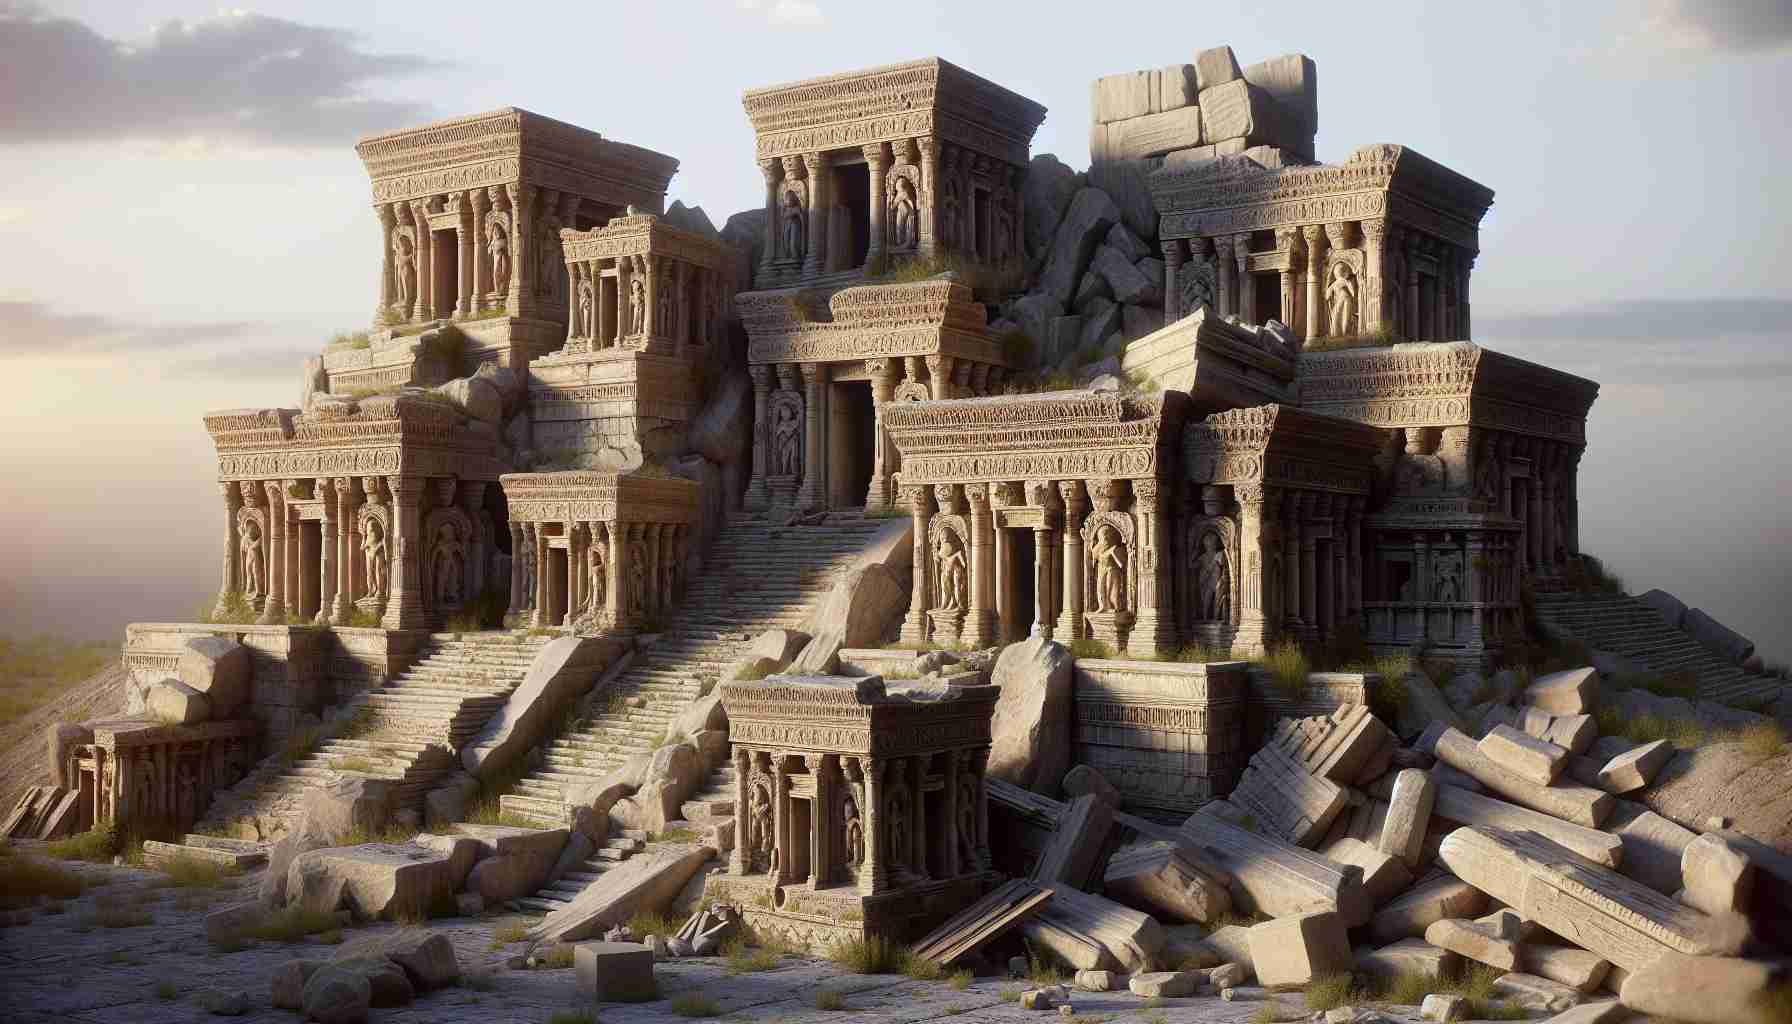 Ανακάλυψαν αρχαίο ελληνικό ναό που συνδέεται με τον Ηρακλή και τον Μέγα Αλέξανδρο στο ν.α. Ιράκ